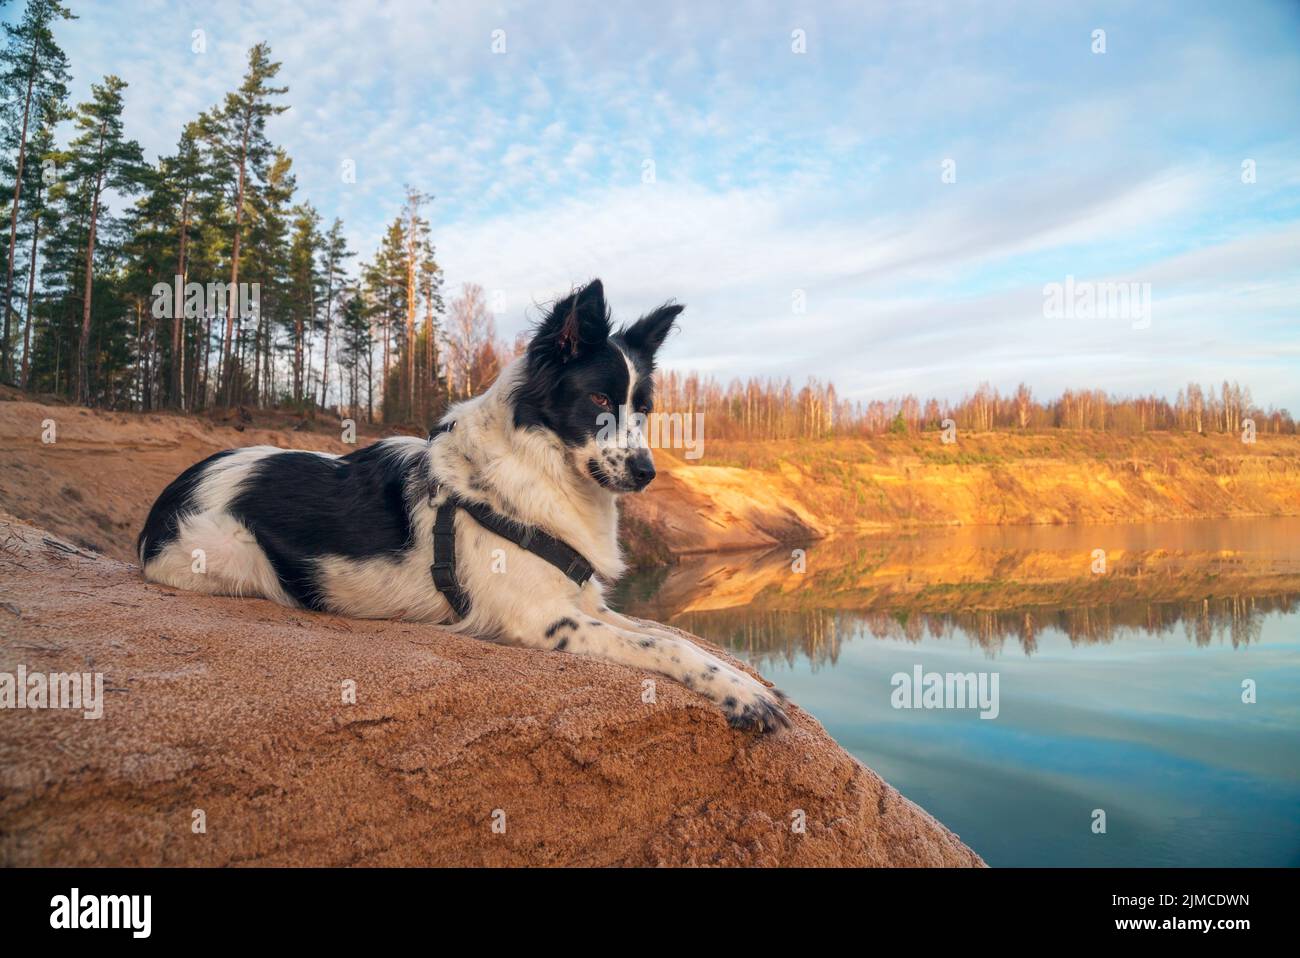 El perro mira en la distancia en la orilla de una guarida de arena Foto de stock